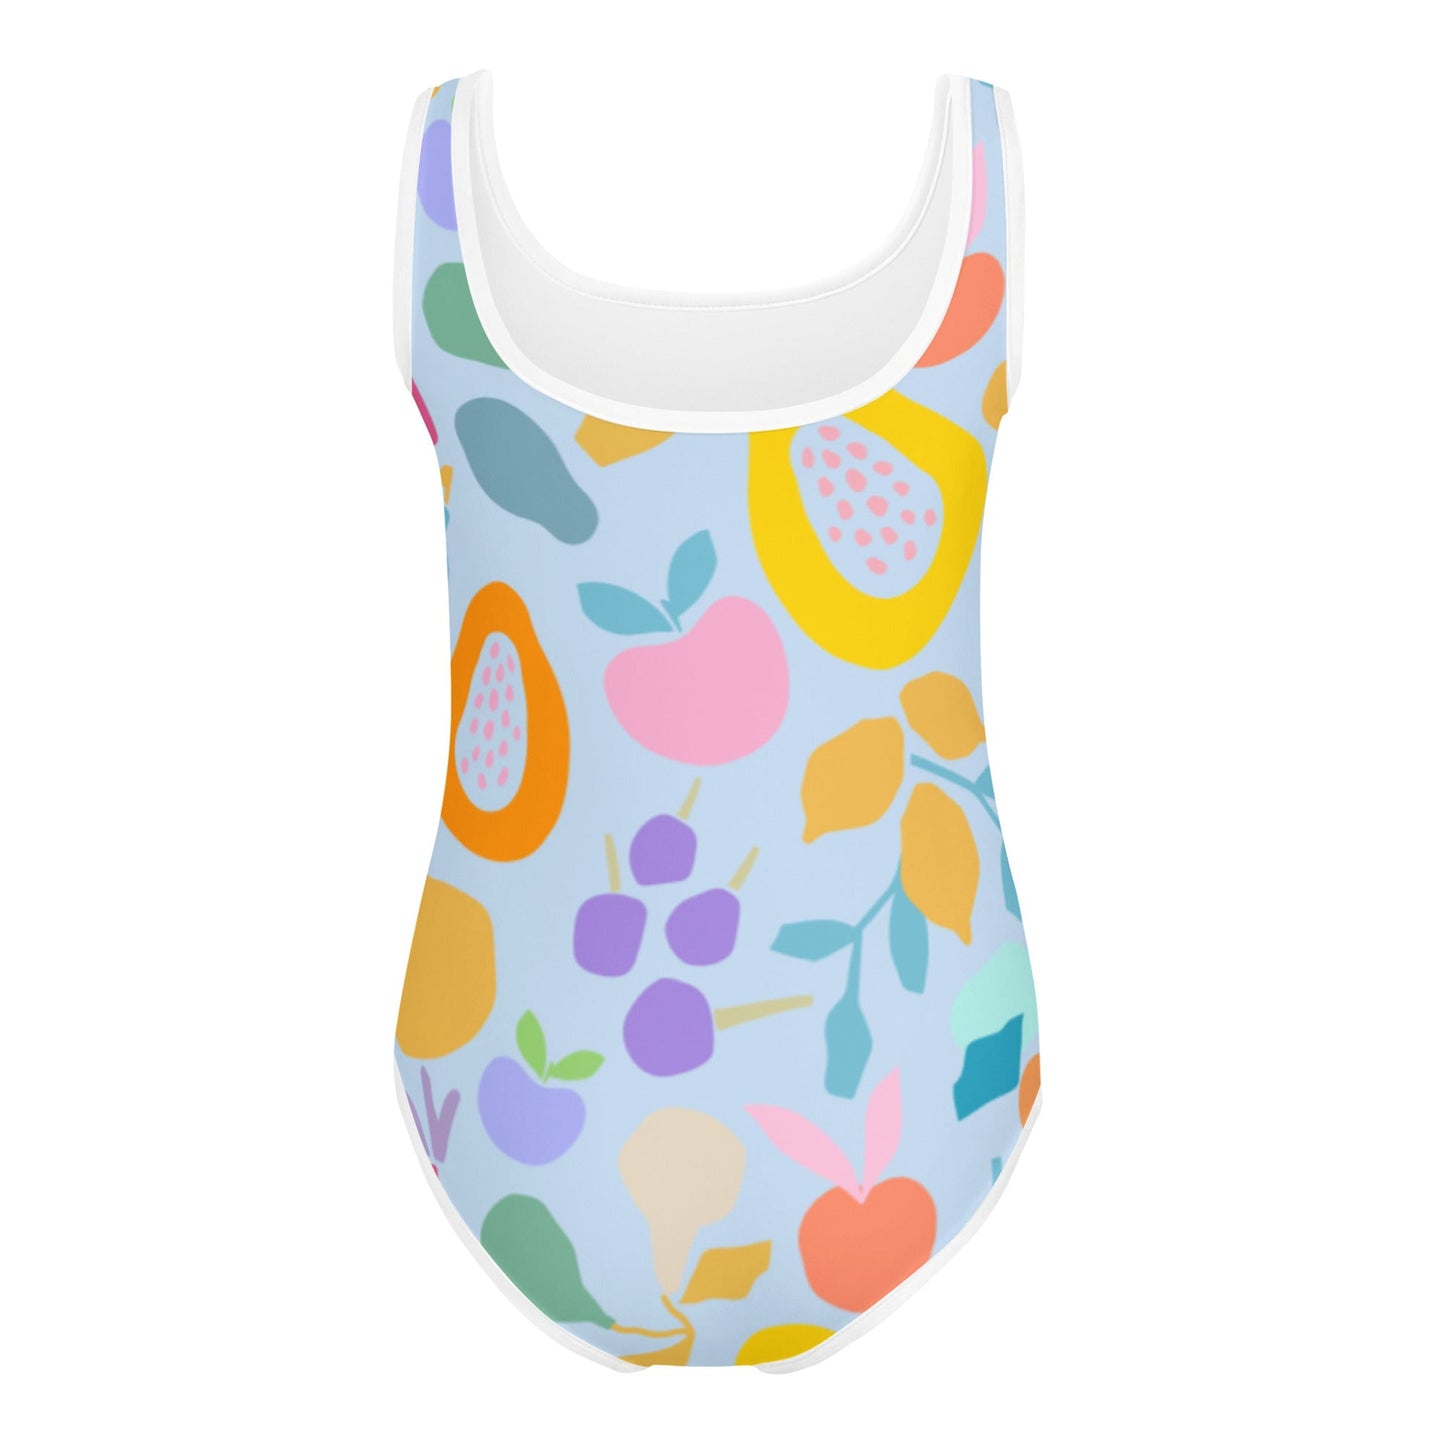 Fruity - Badeanzug für Babys & Kinder